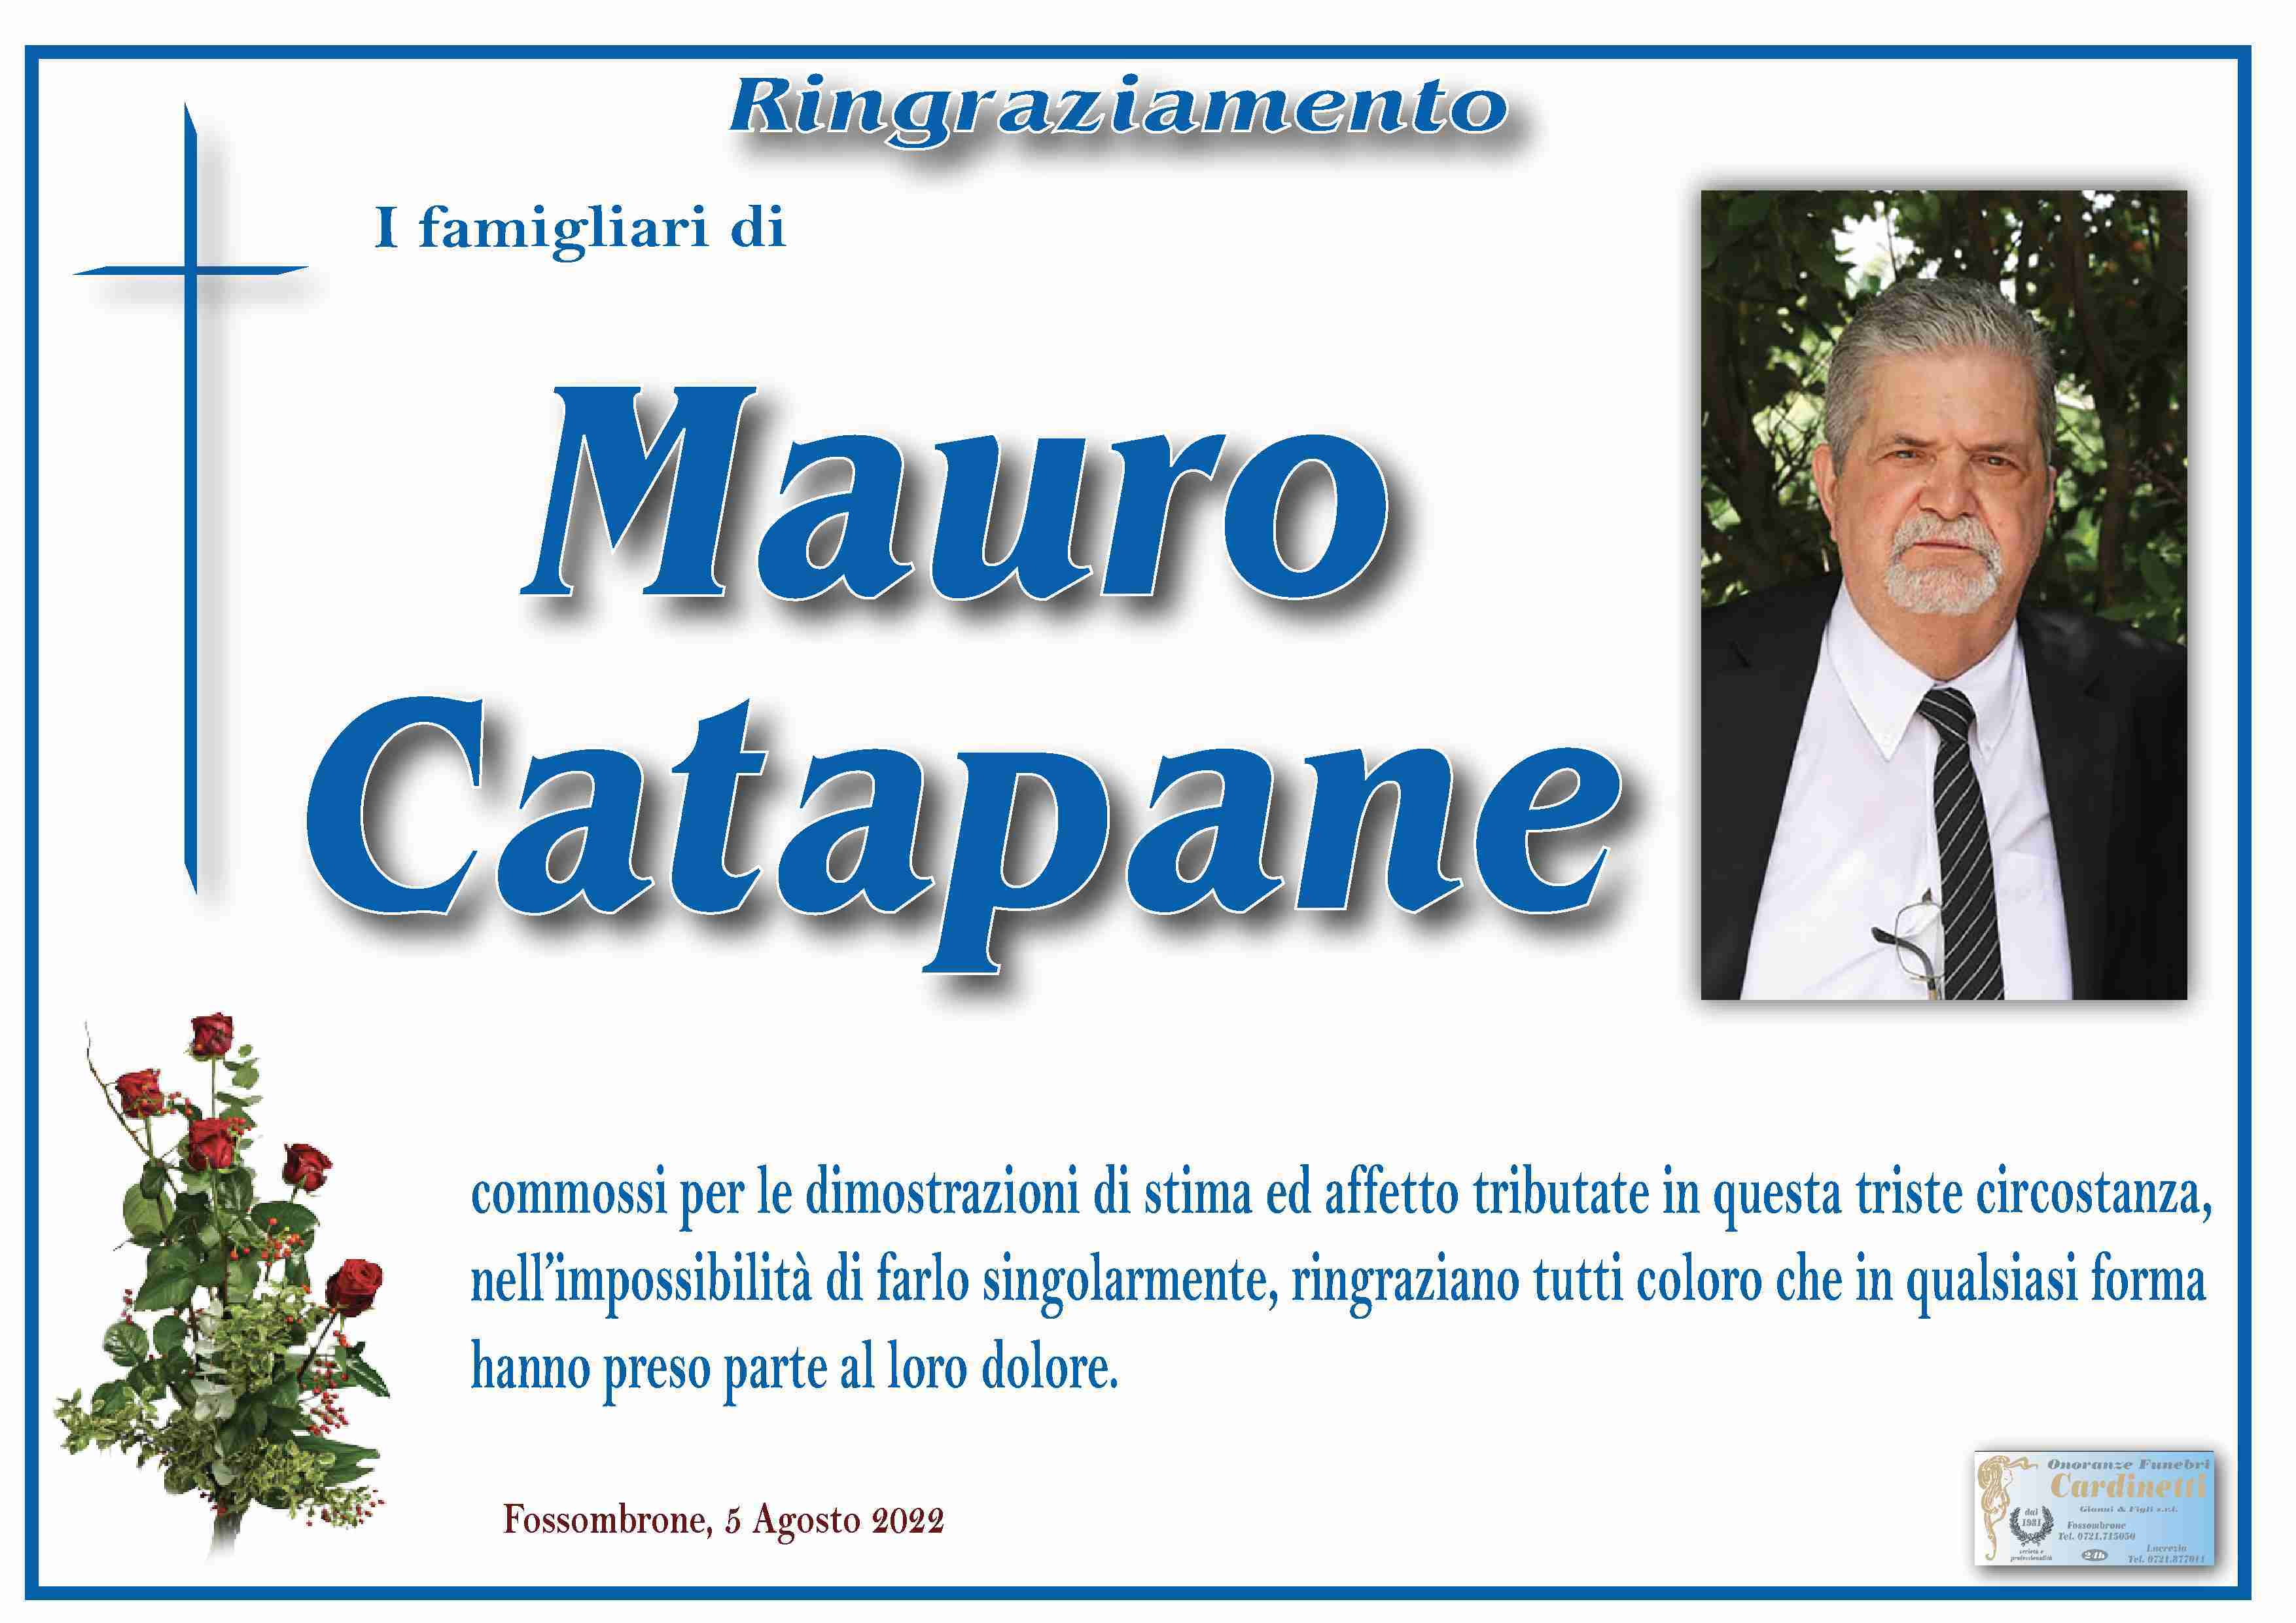 Mauro Catapane